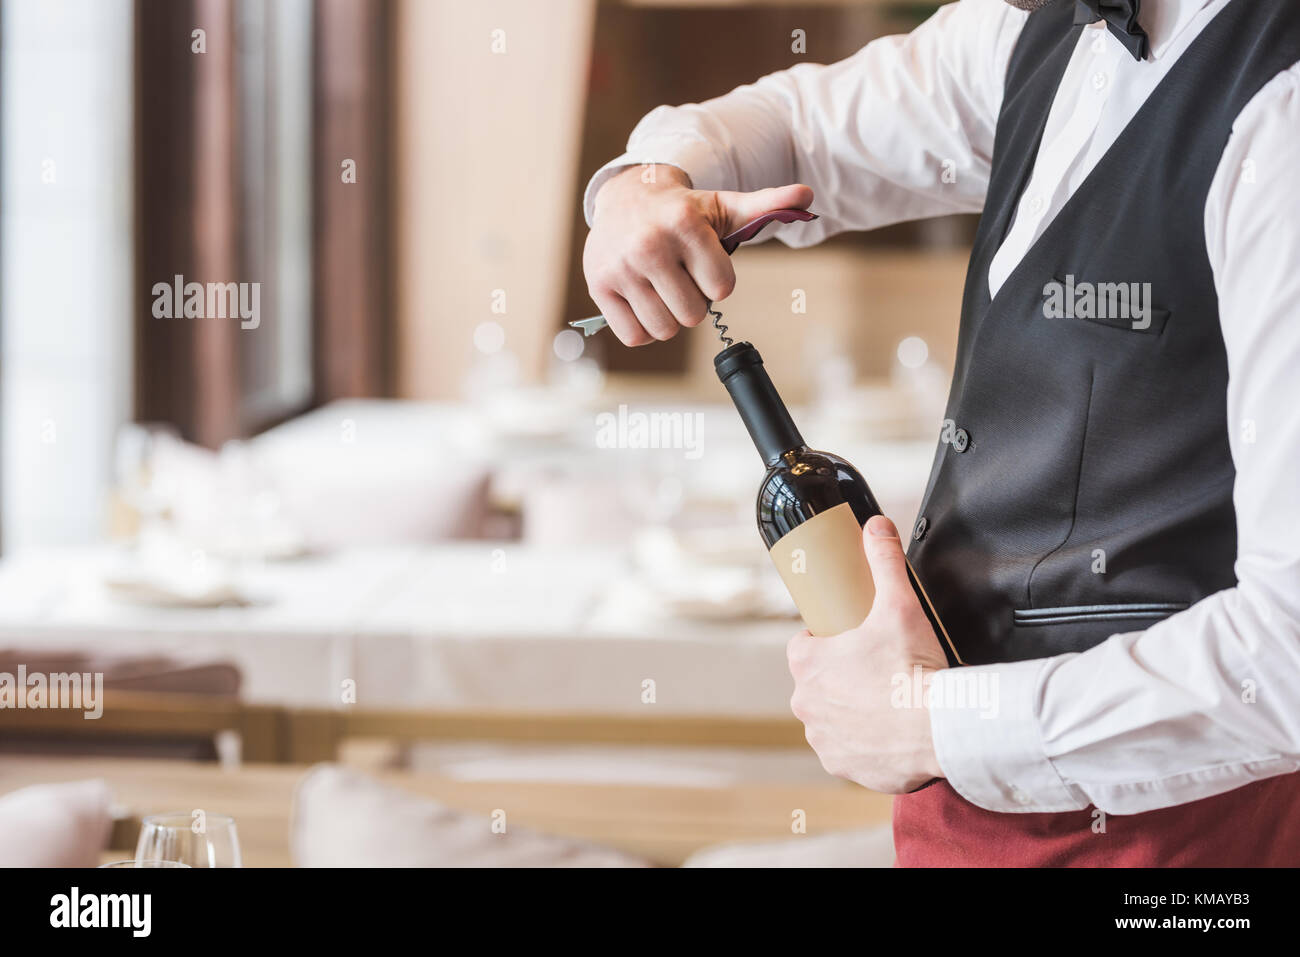 waiter opening bottle of wine Stock Photo